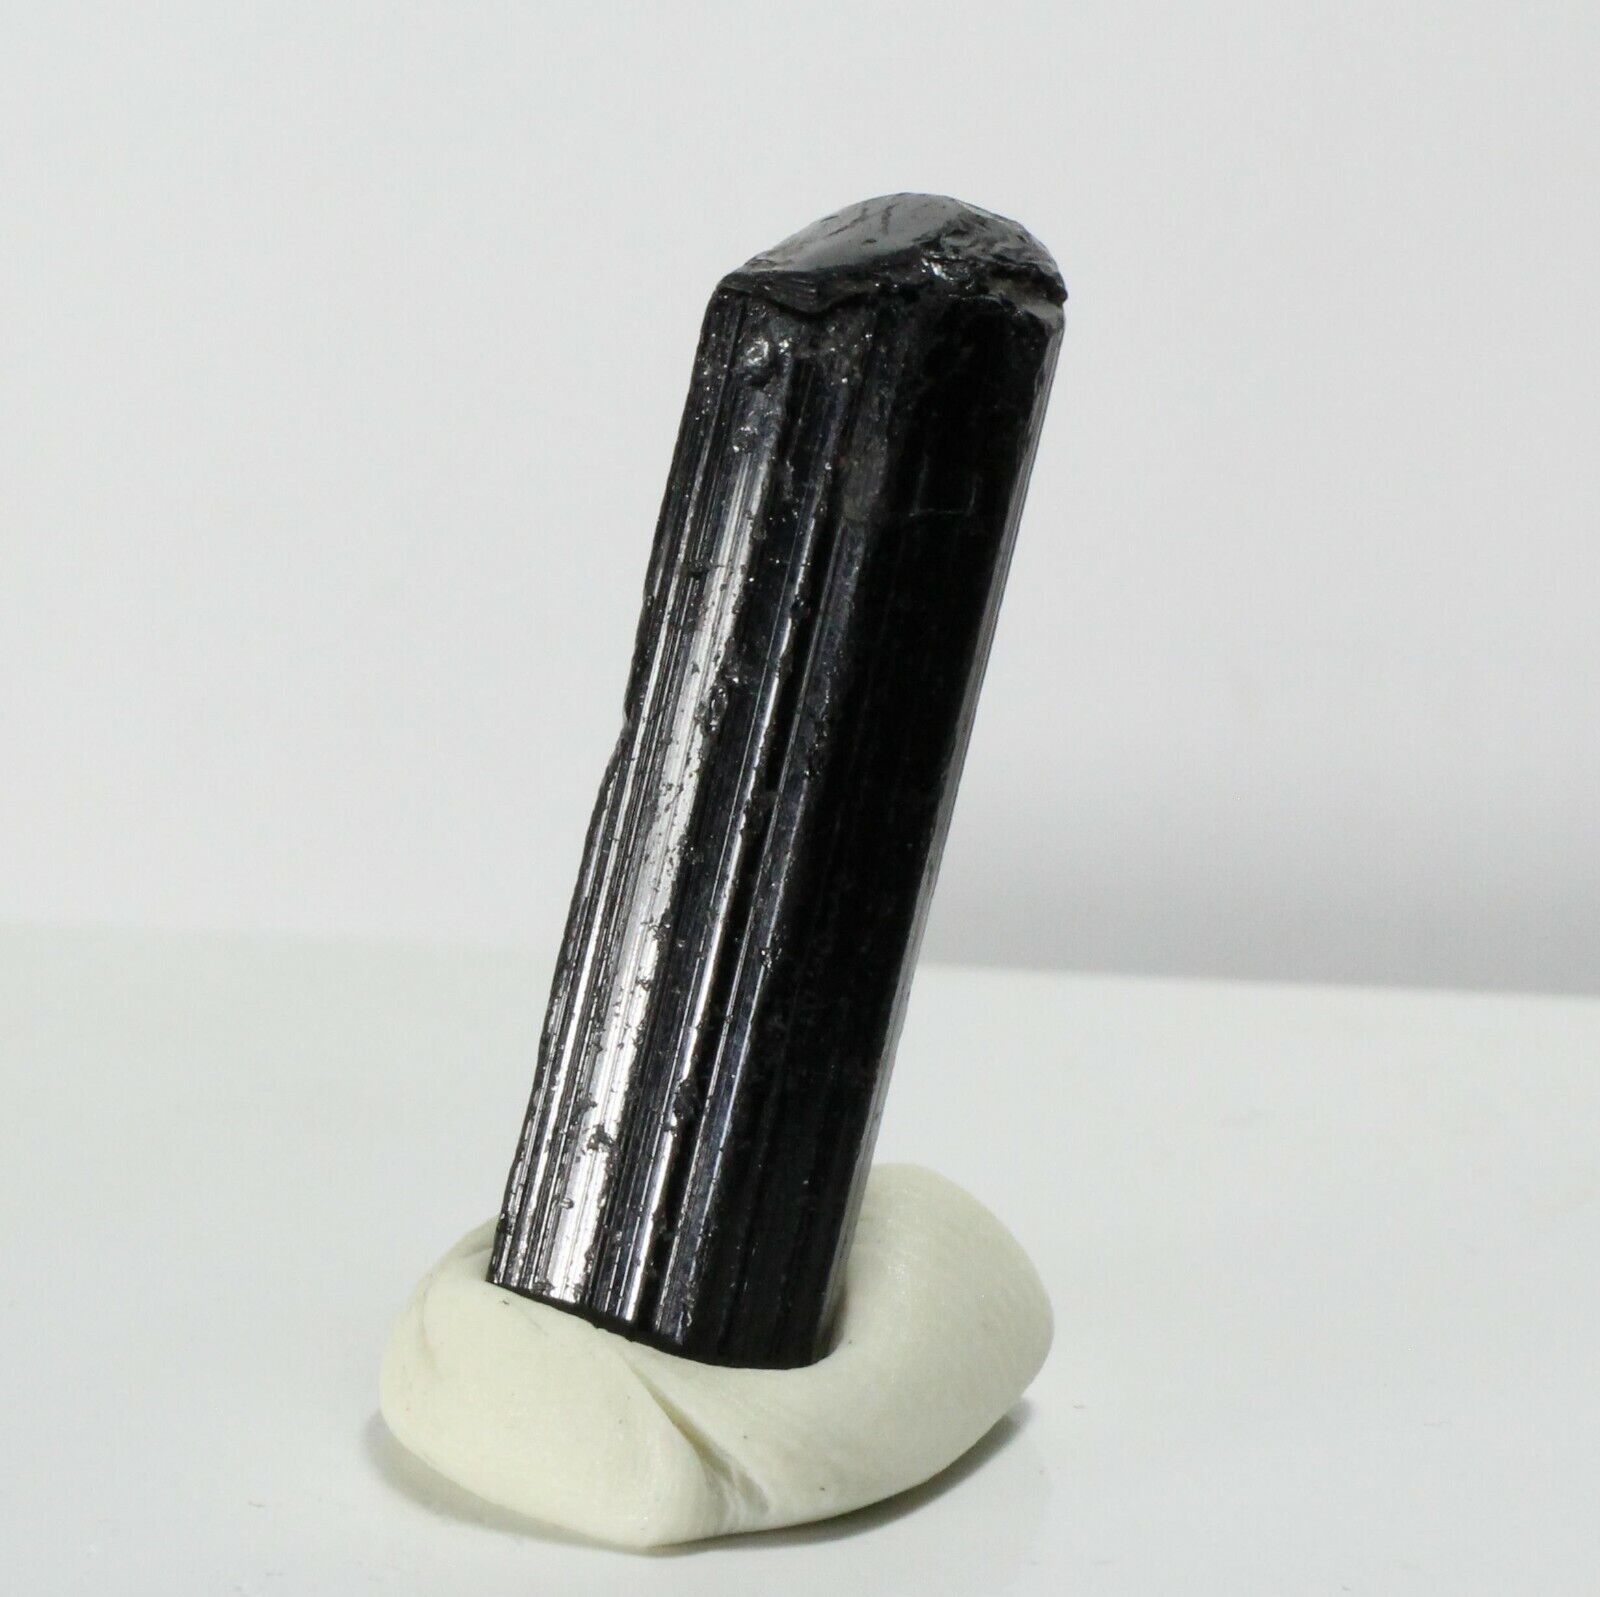 23.50ct Black Tourmaline Crystal Gem Mineral Skardu Valley Pakistan Schorl A13